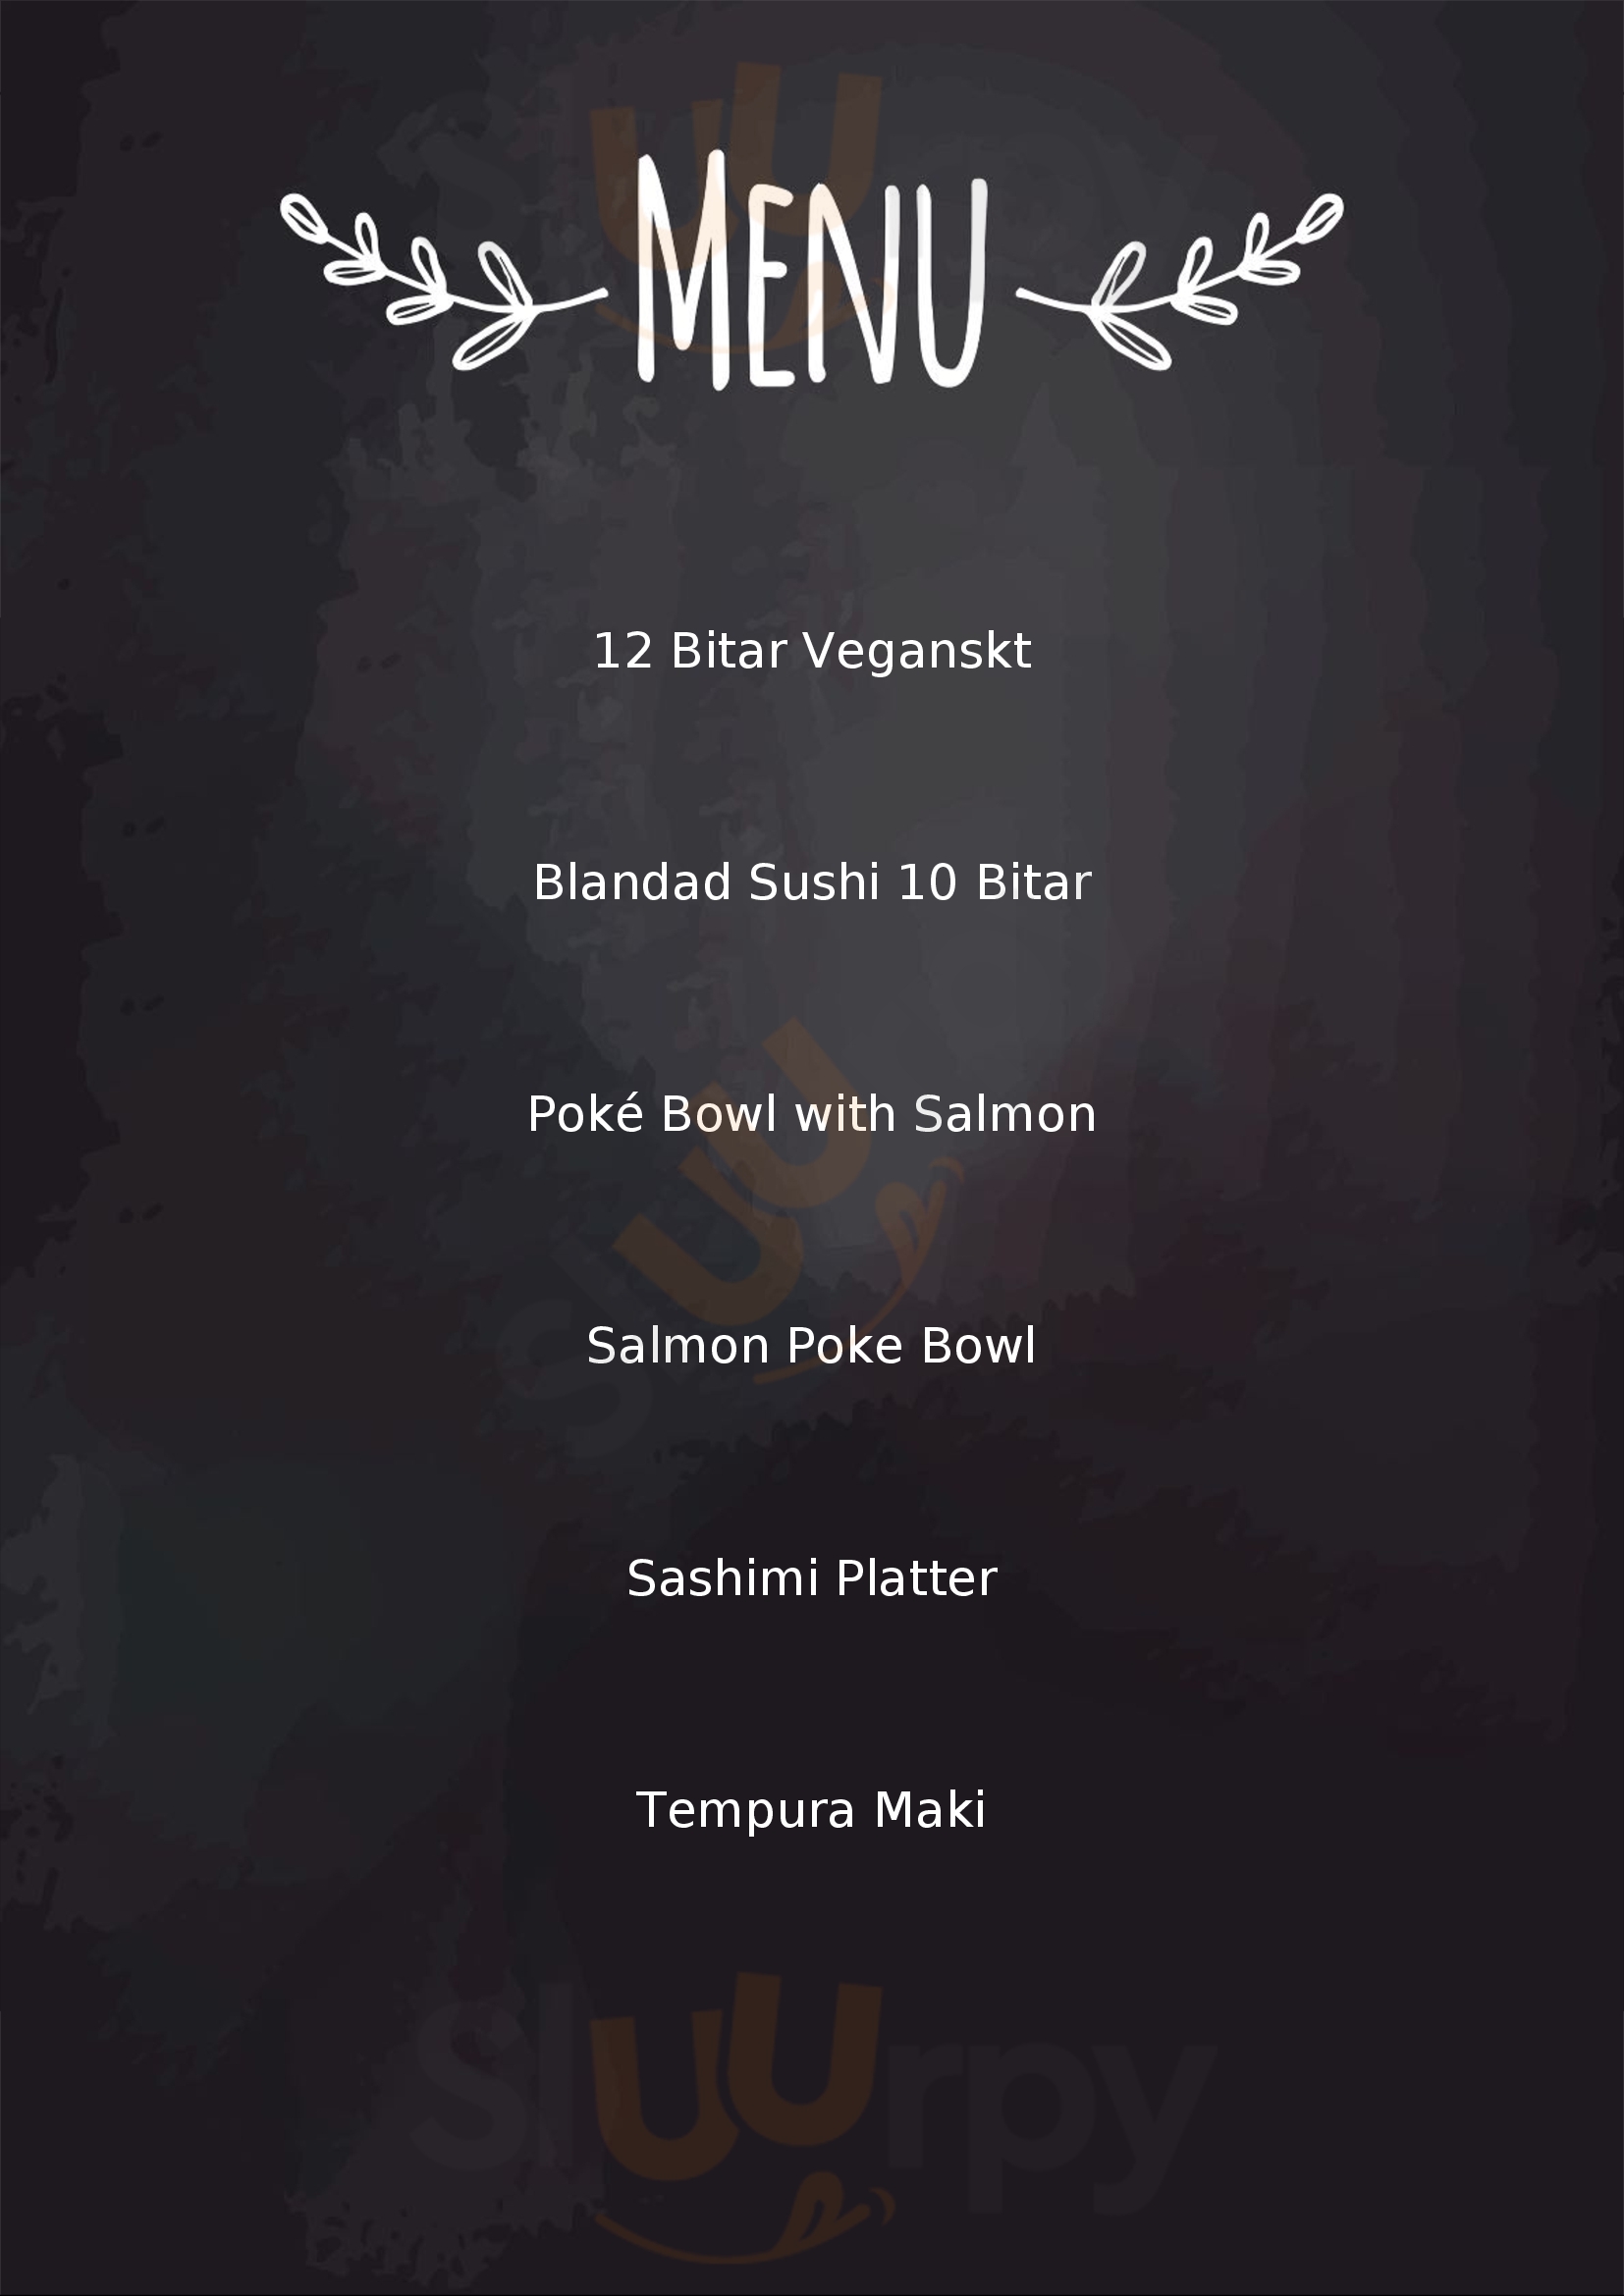 Mimami Sushi & Poké Bowl Bar Oskarshamn Menu - 1